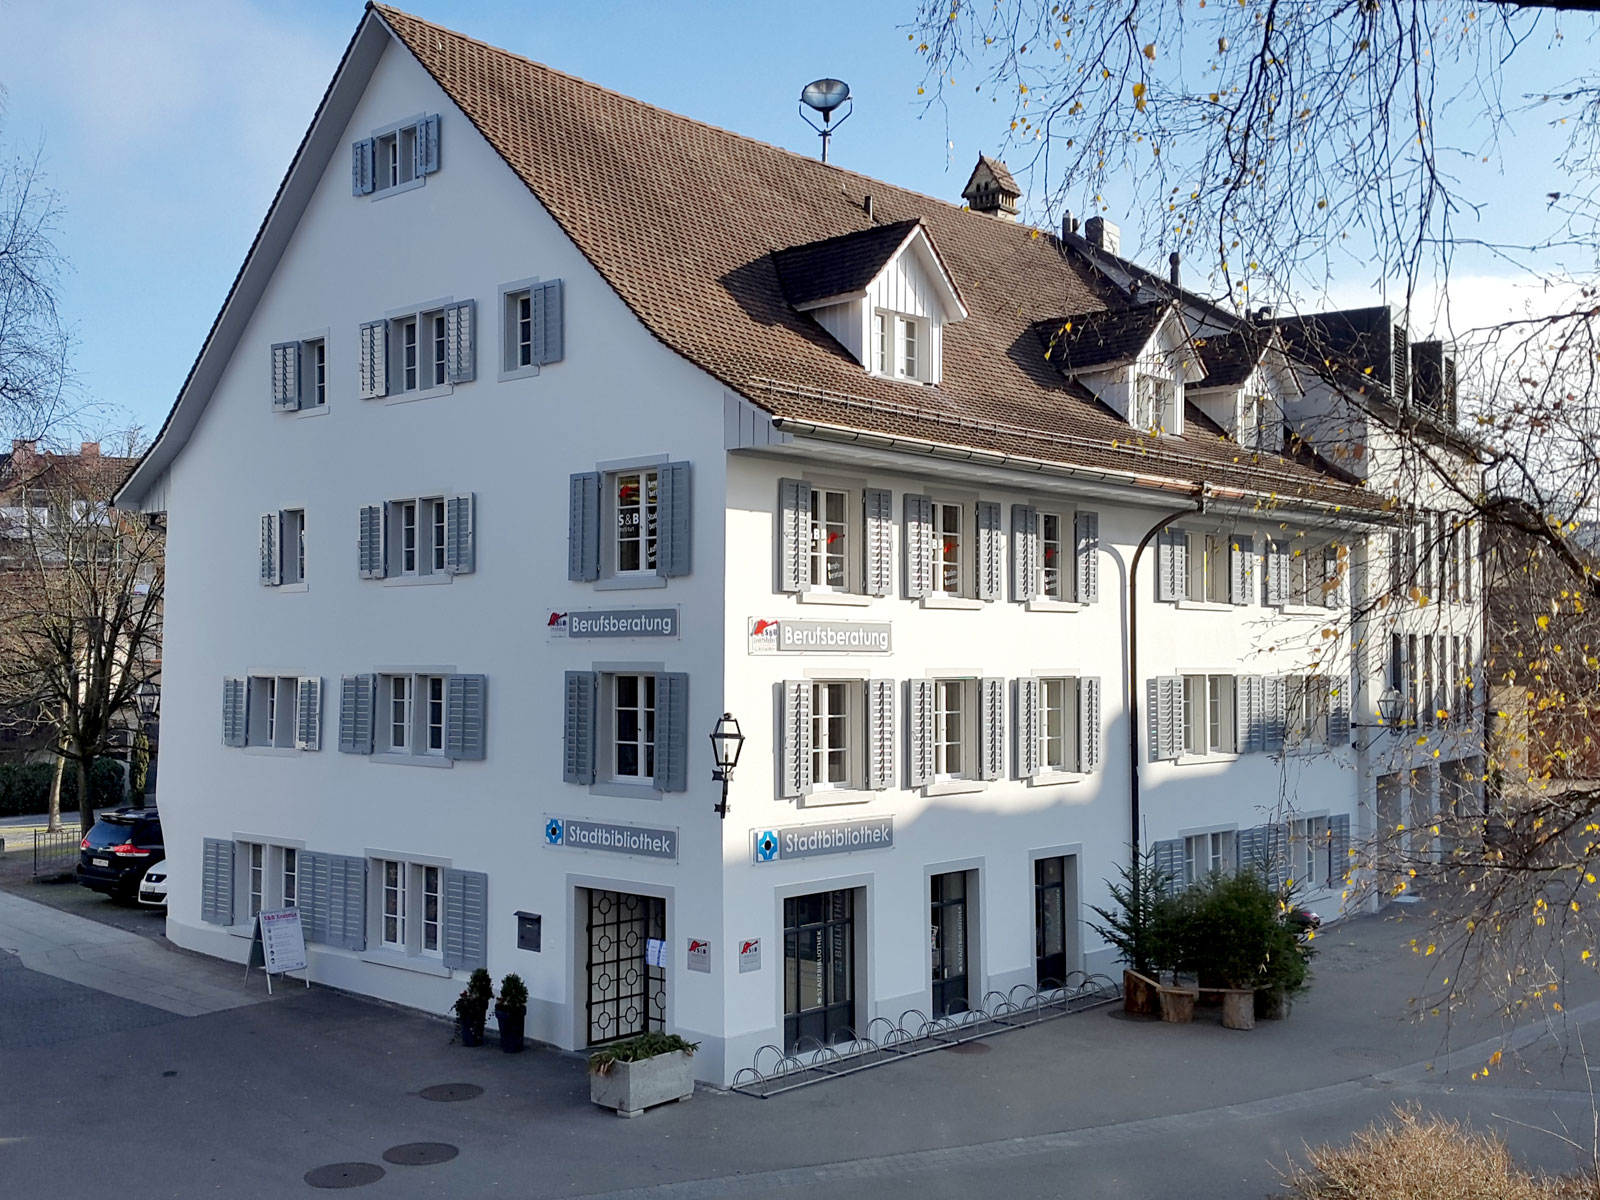 Das S&B Institut an der Marktgasse 35 in der Altstadt von Bülach